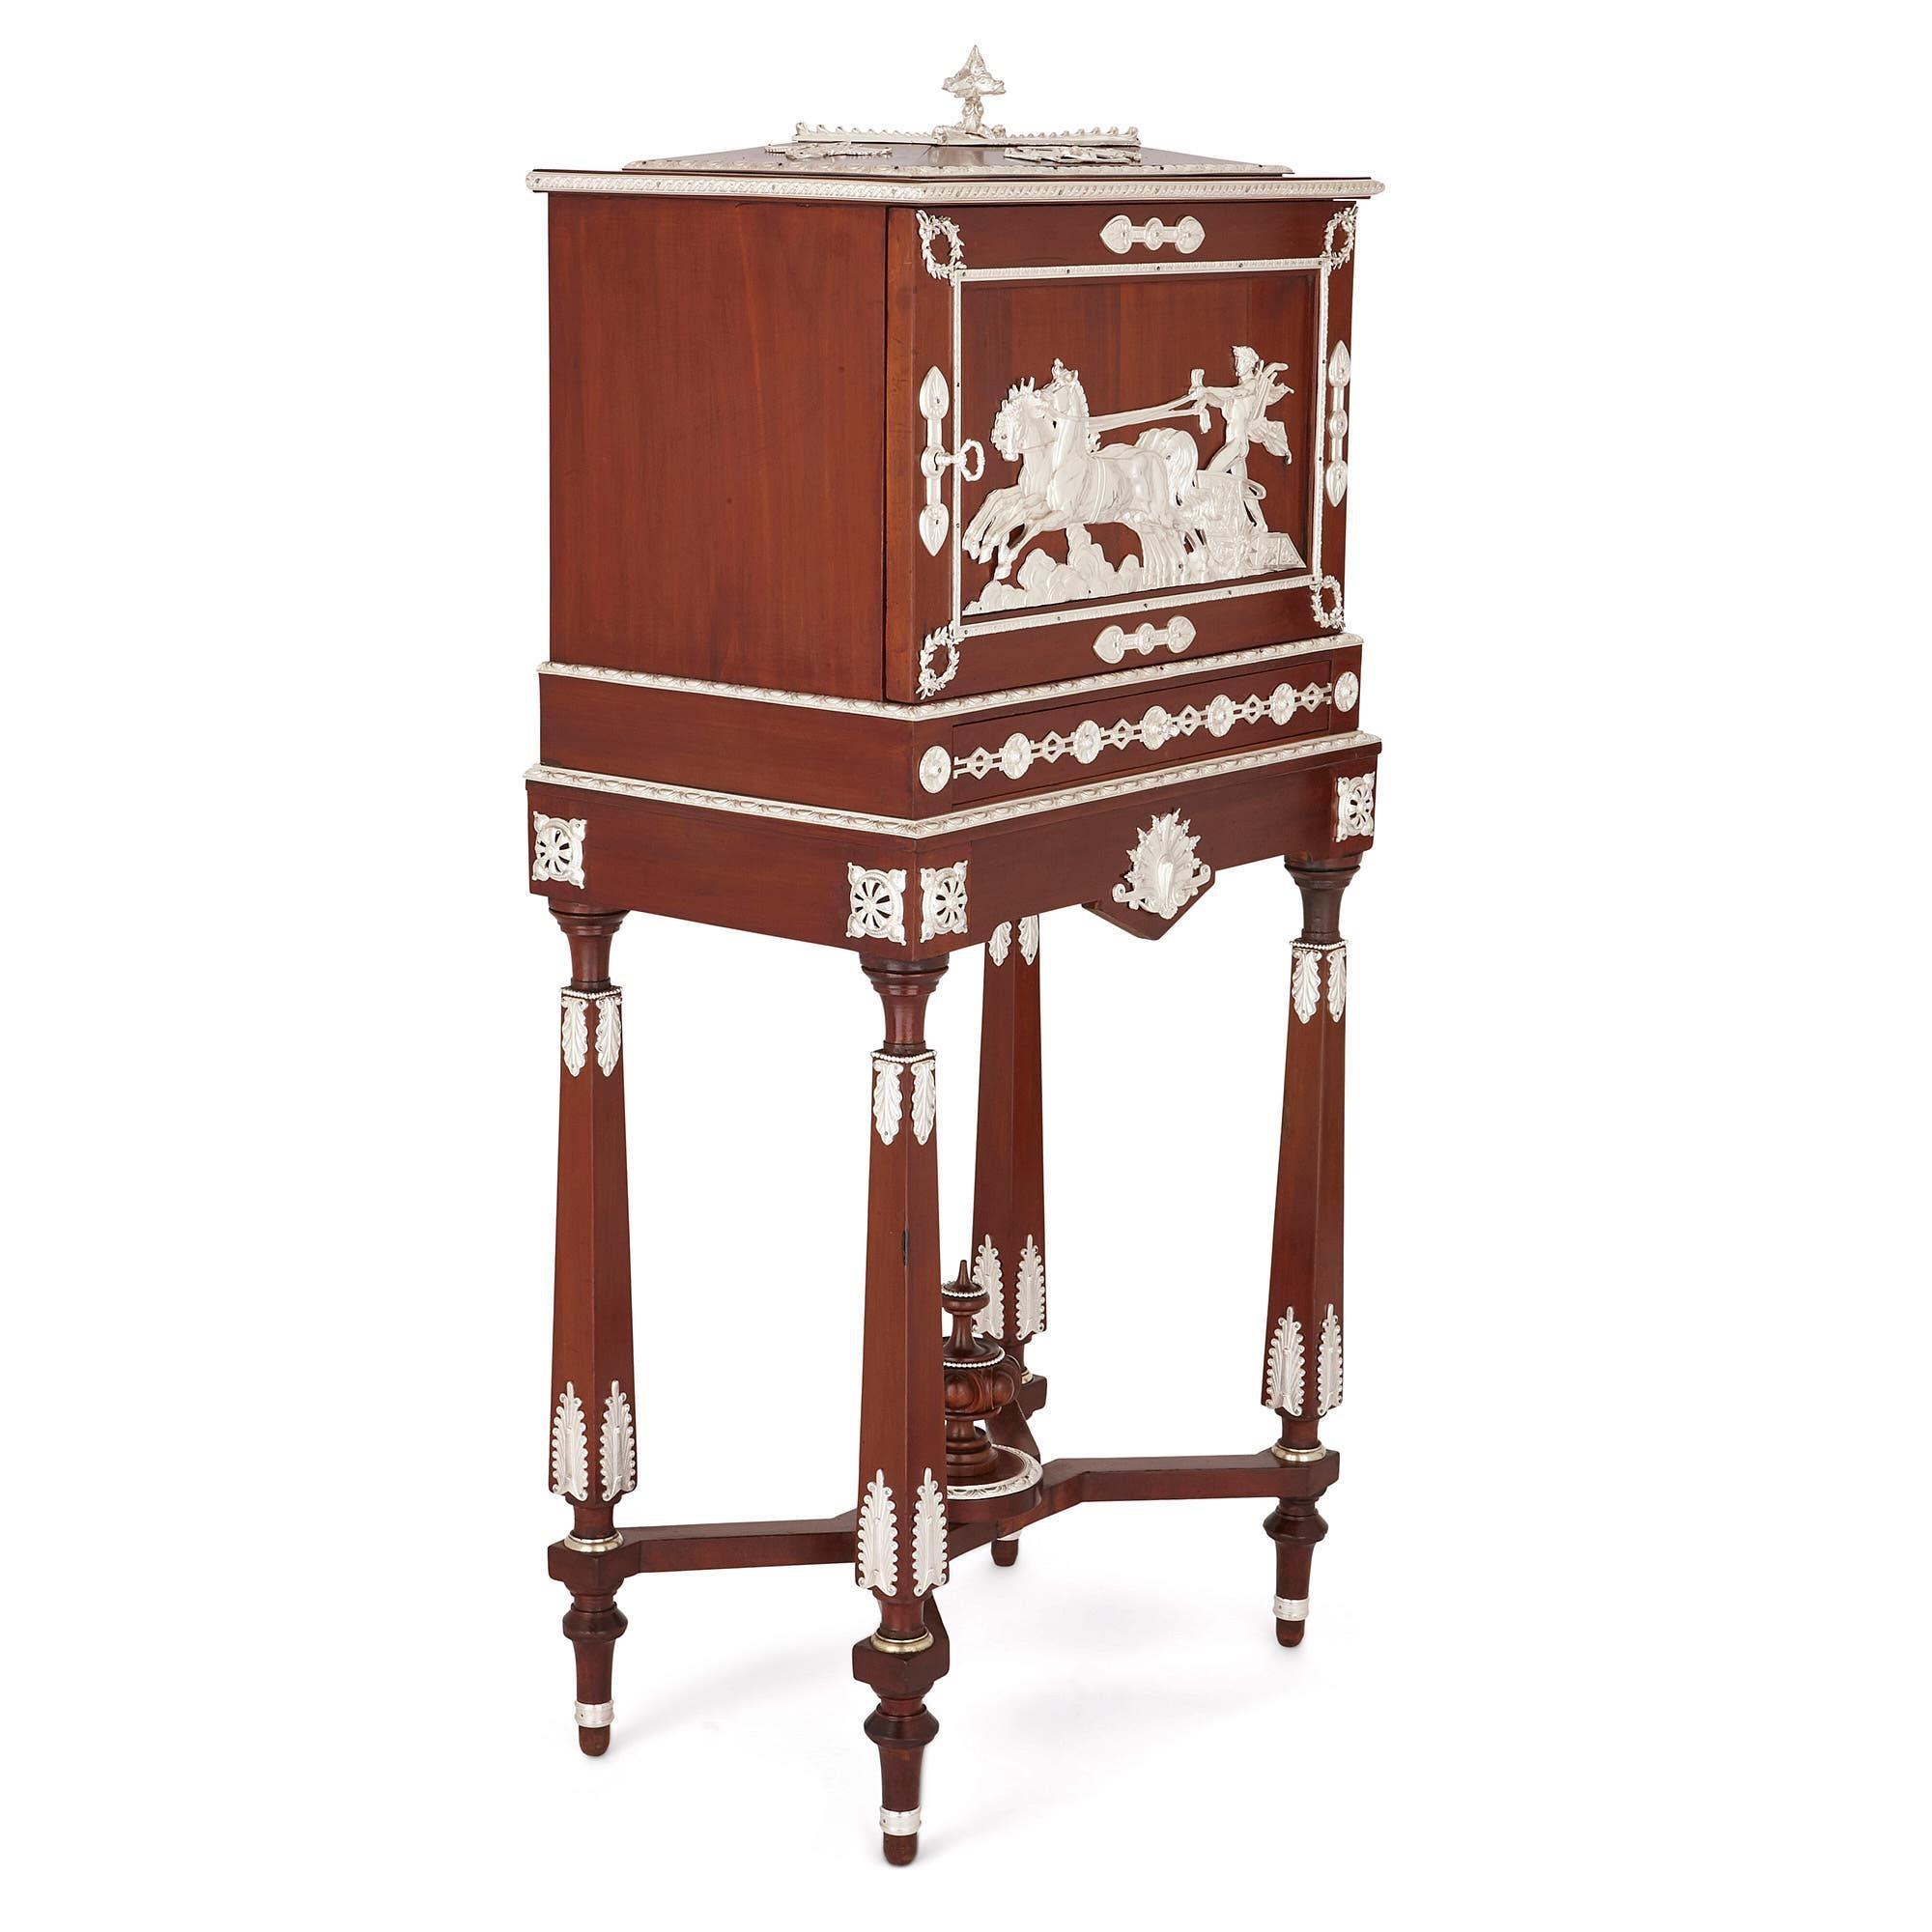 Fabriquée par le célèbre ébéniste Charles-Guillaume Diehl (1811-1885), cette armoire à tabac (humidor) est une pièce vraiment exquise de mobilier ancien en chêne. Diehl était célèbre au XIXe siècle pour ses meubles, souvent décorés d'une marqueterie